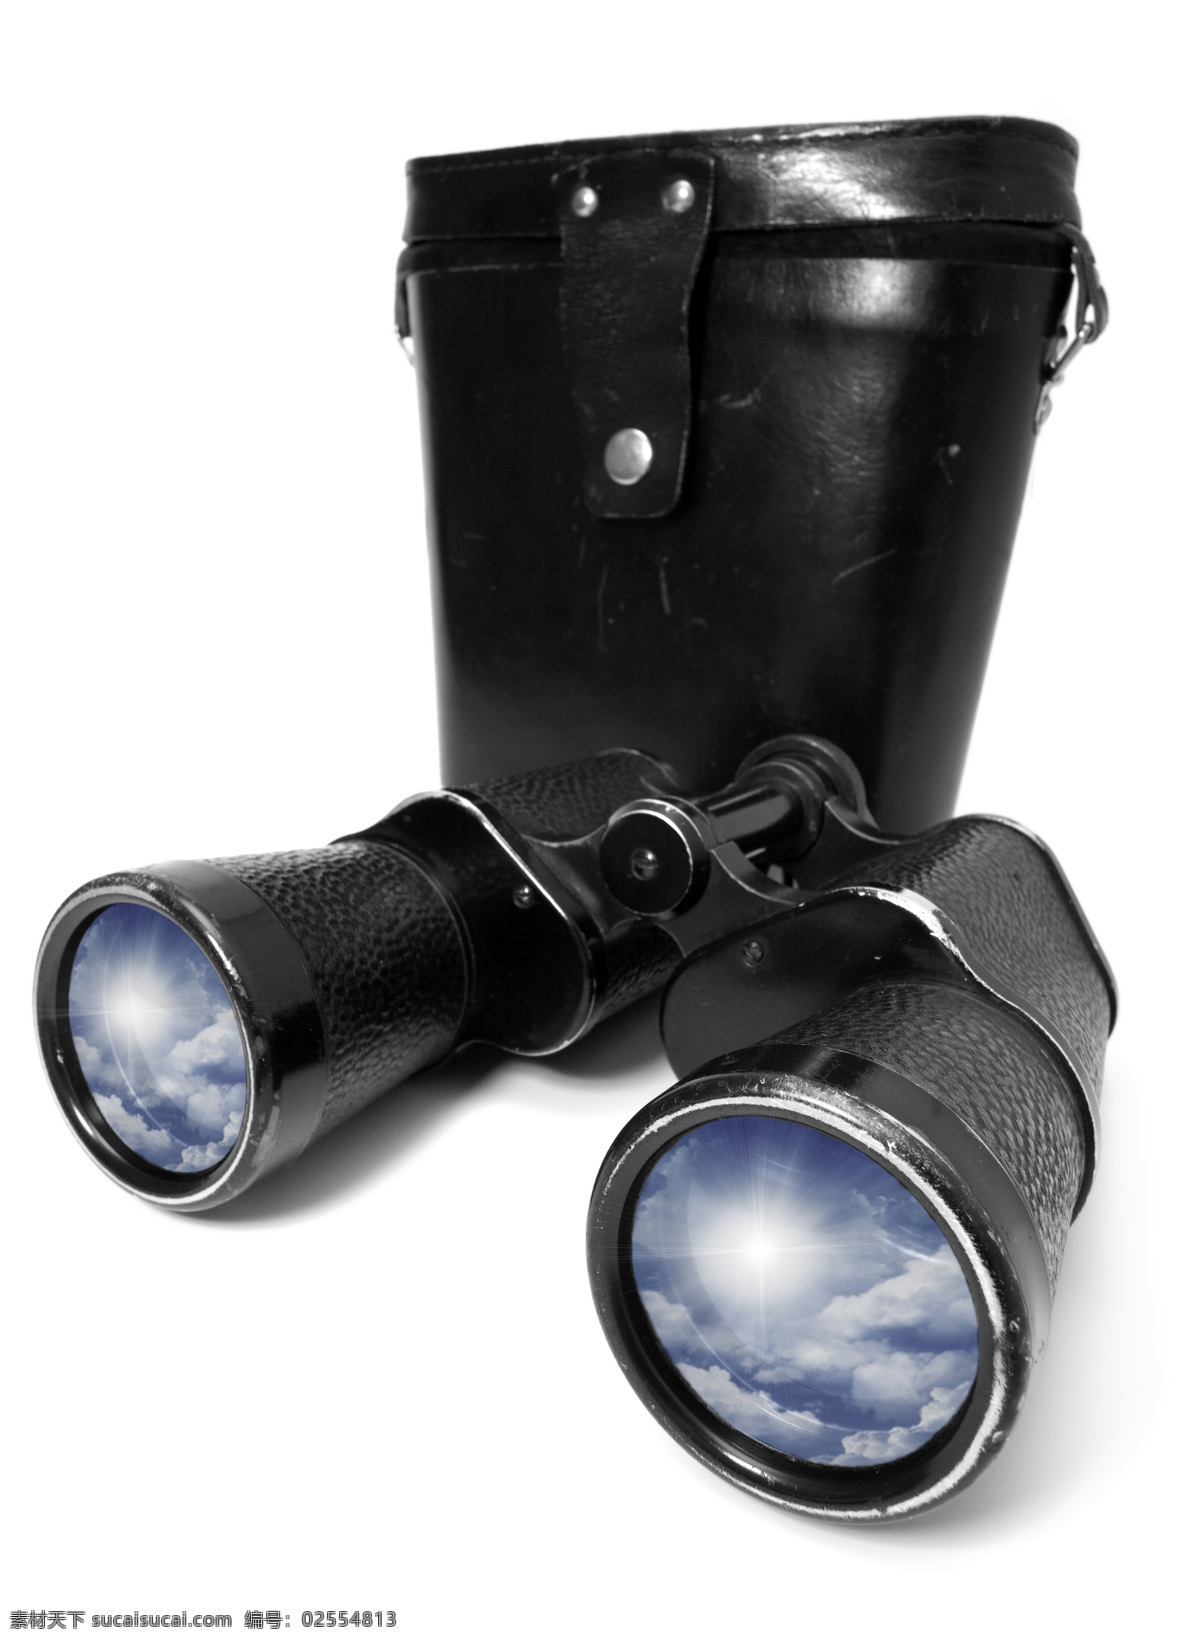 双筒望远镜 望远镜 双目望远镜 高倍望远镜 双筒 高倍 科技产品 眼镜 镜片 玻璃 镜头 黑色 生活素材 其他类别 生活百科 白色